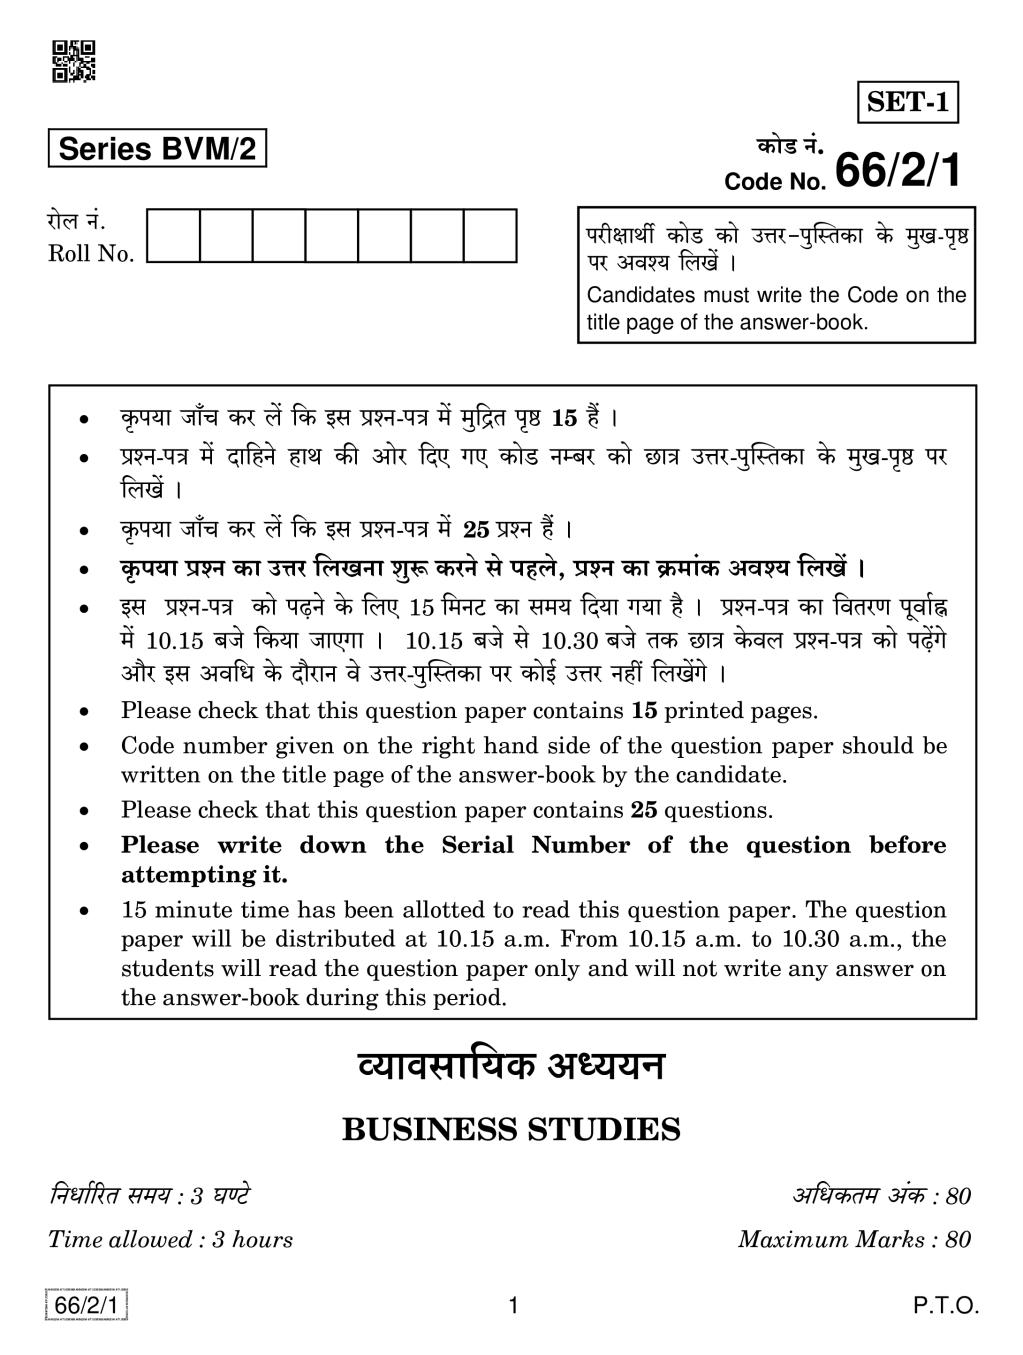 CBSE Class 12 Business Studies Question Paper 2019 Set 2 - Page 1